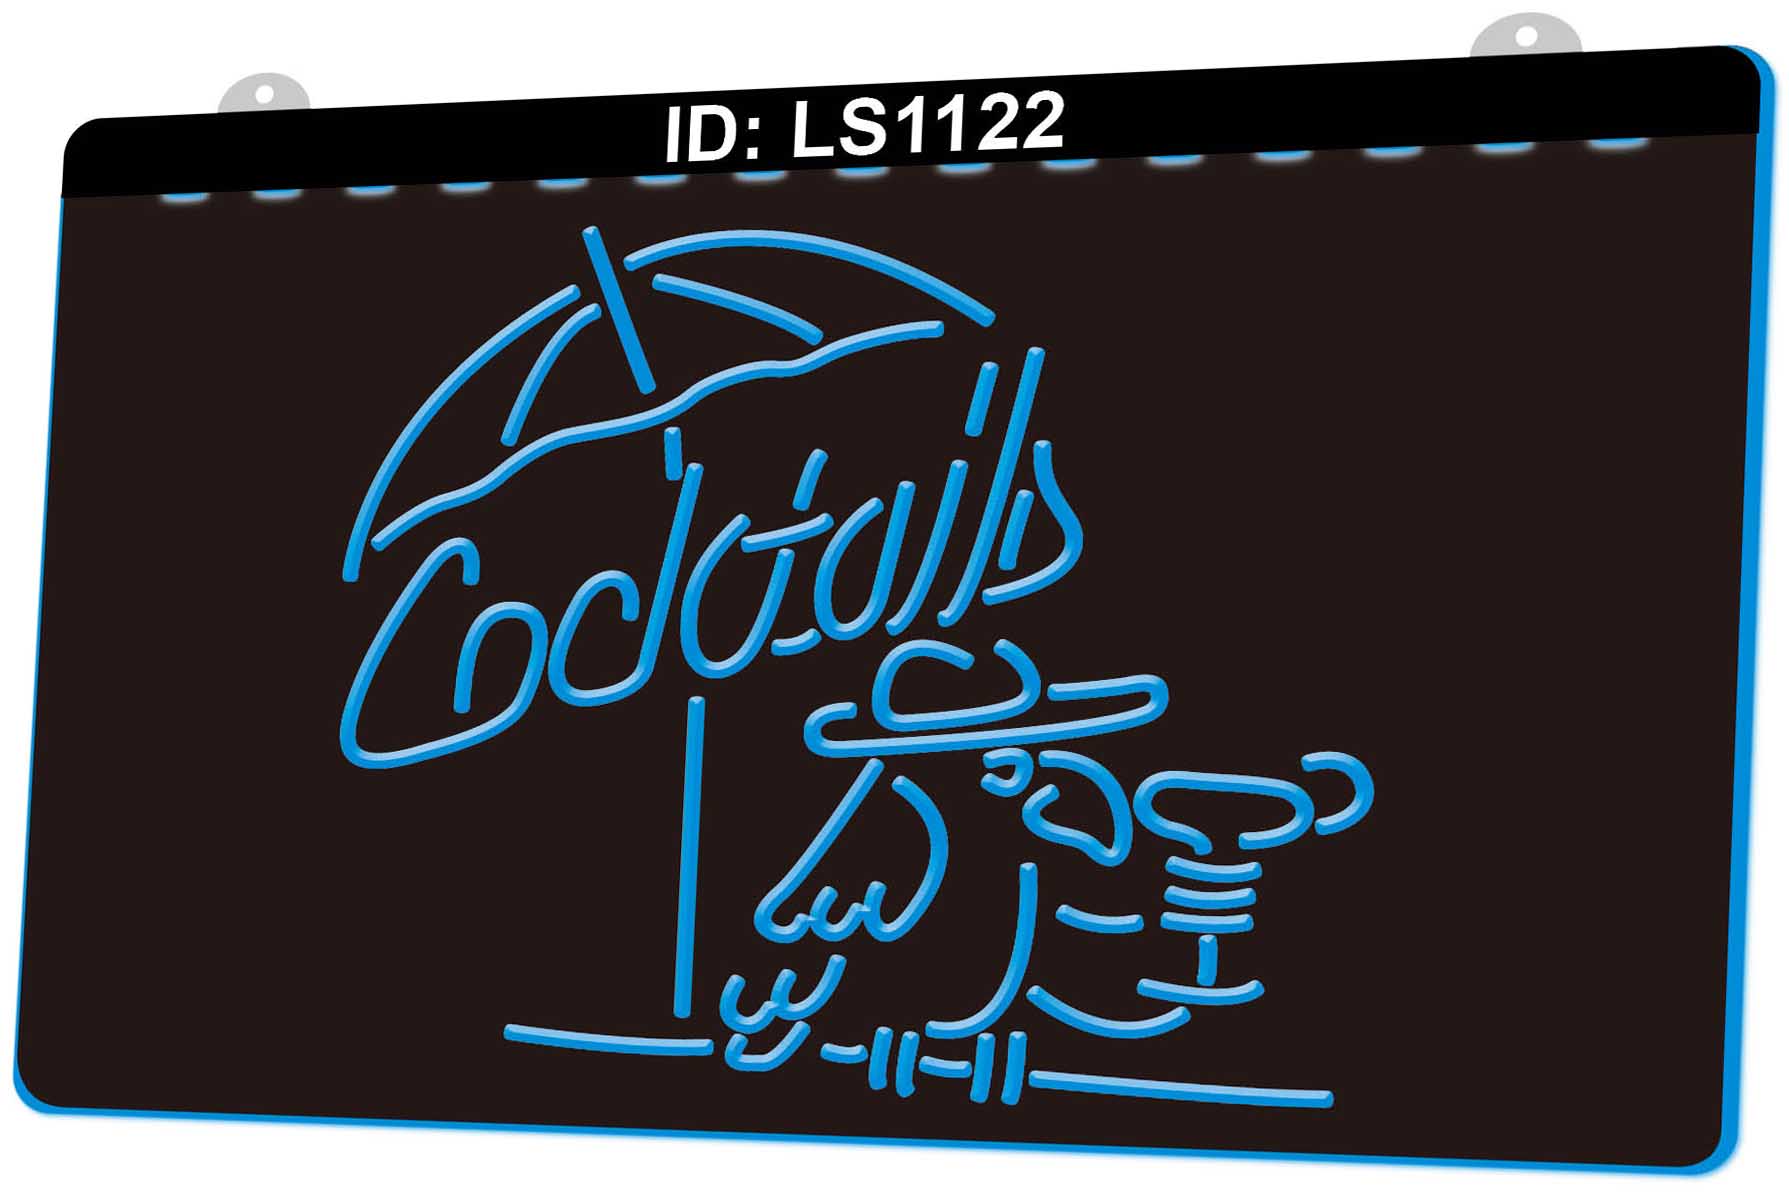 

LS1122 Cocktails Parrot Bar Pub Club 3D Engraving LED Light Sign Wholesale Retail